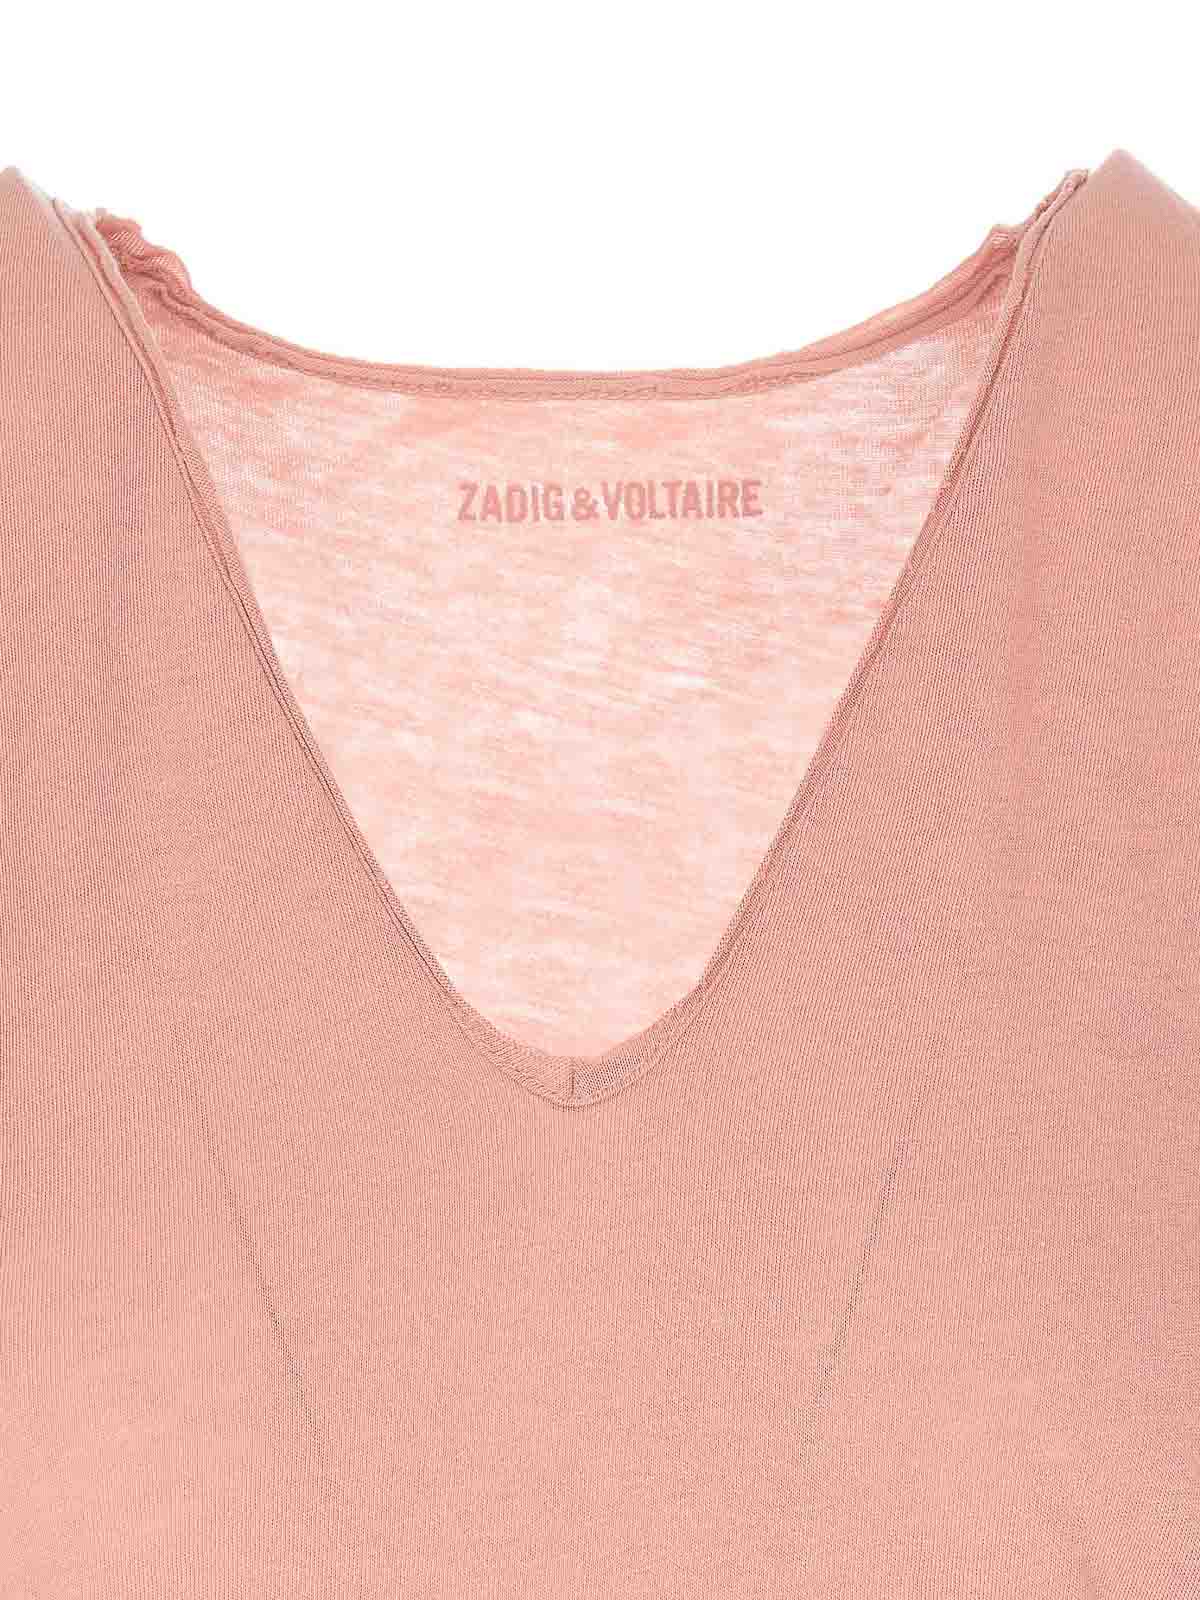 Camisetas Zadig&Voltaire - Camiseta - Color Carne Y Neutral - JWTS01580652